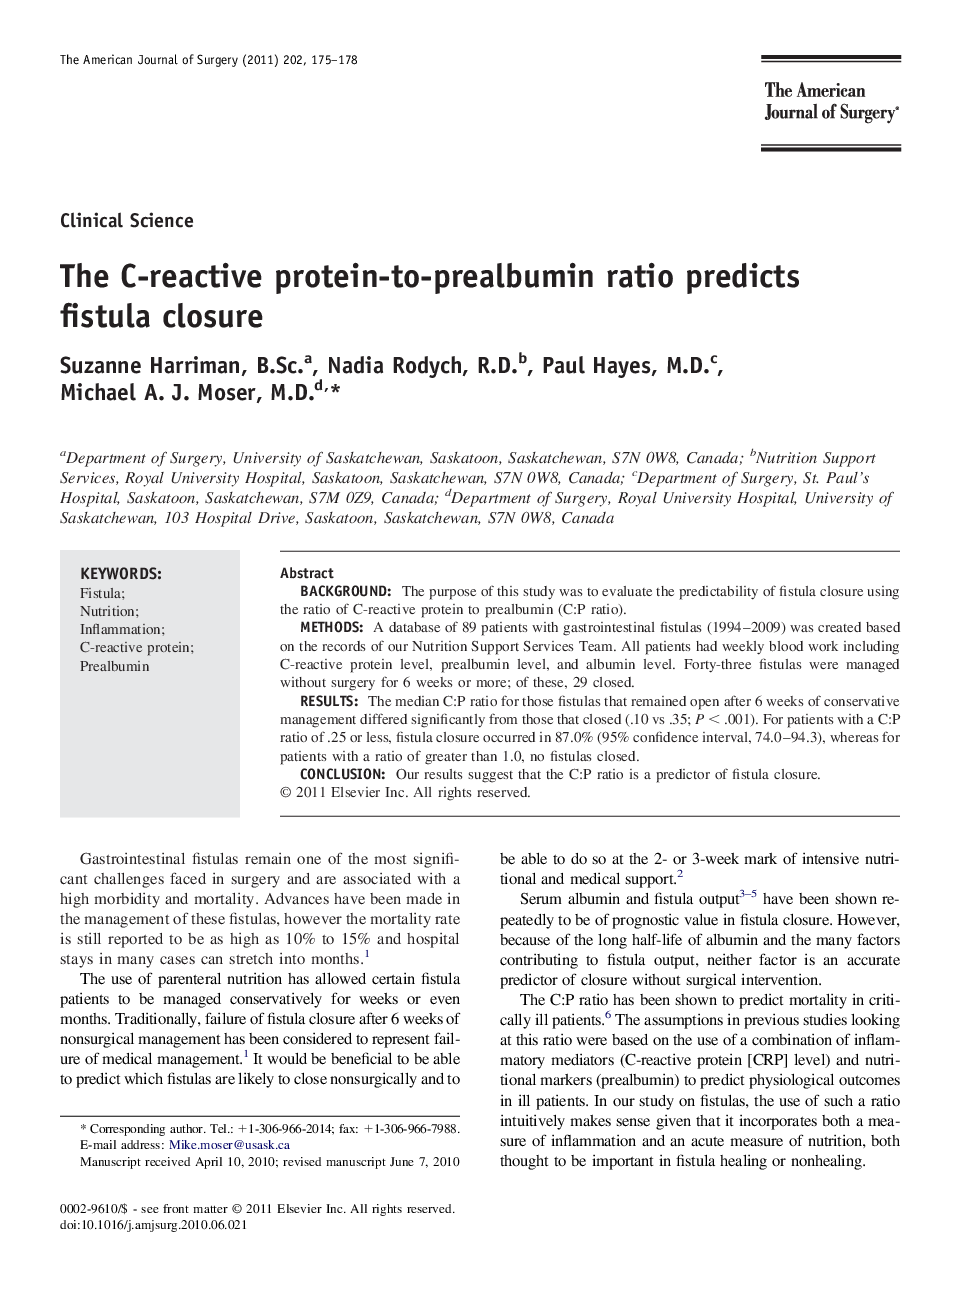 The C-reactive protein-to-prealbumin ratio predicts fistula closure